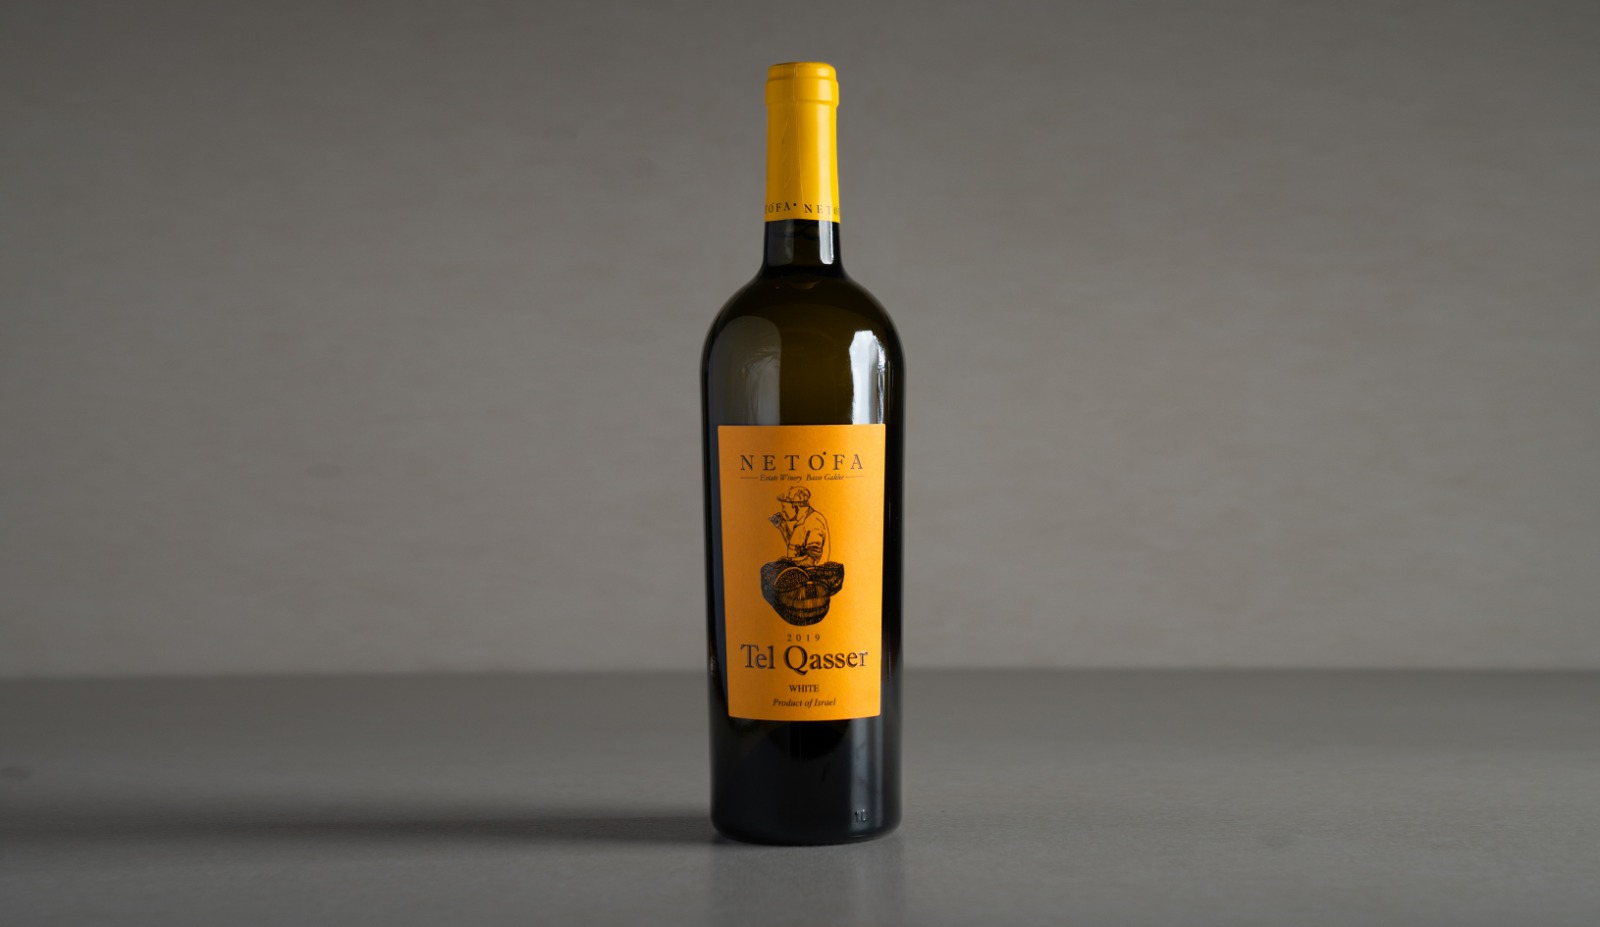 White wine Netofa "Tel Qaser" 2019